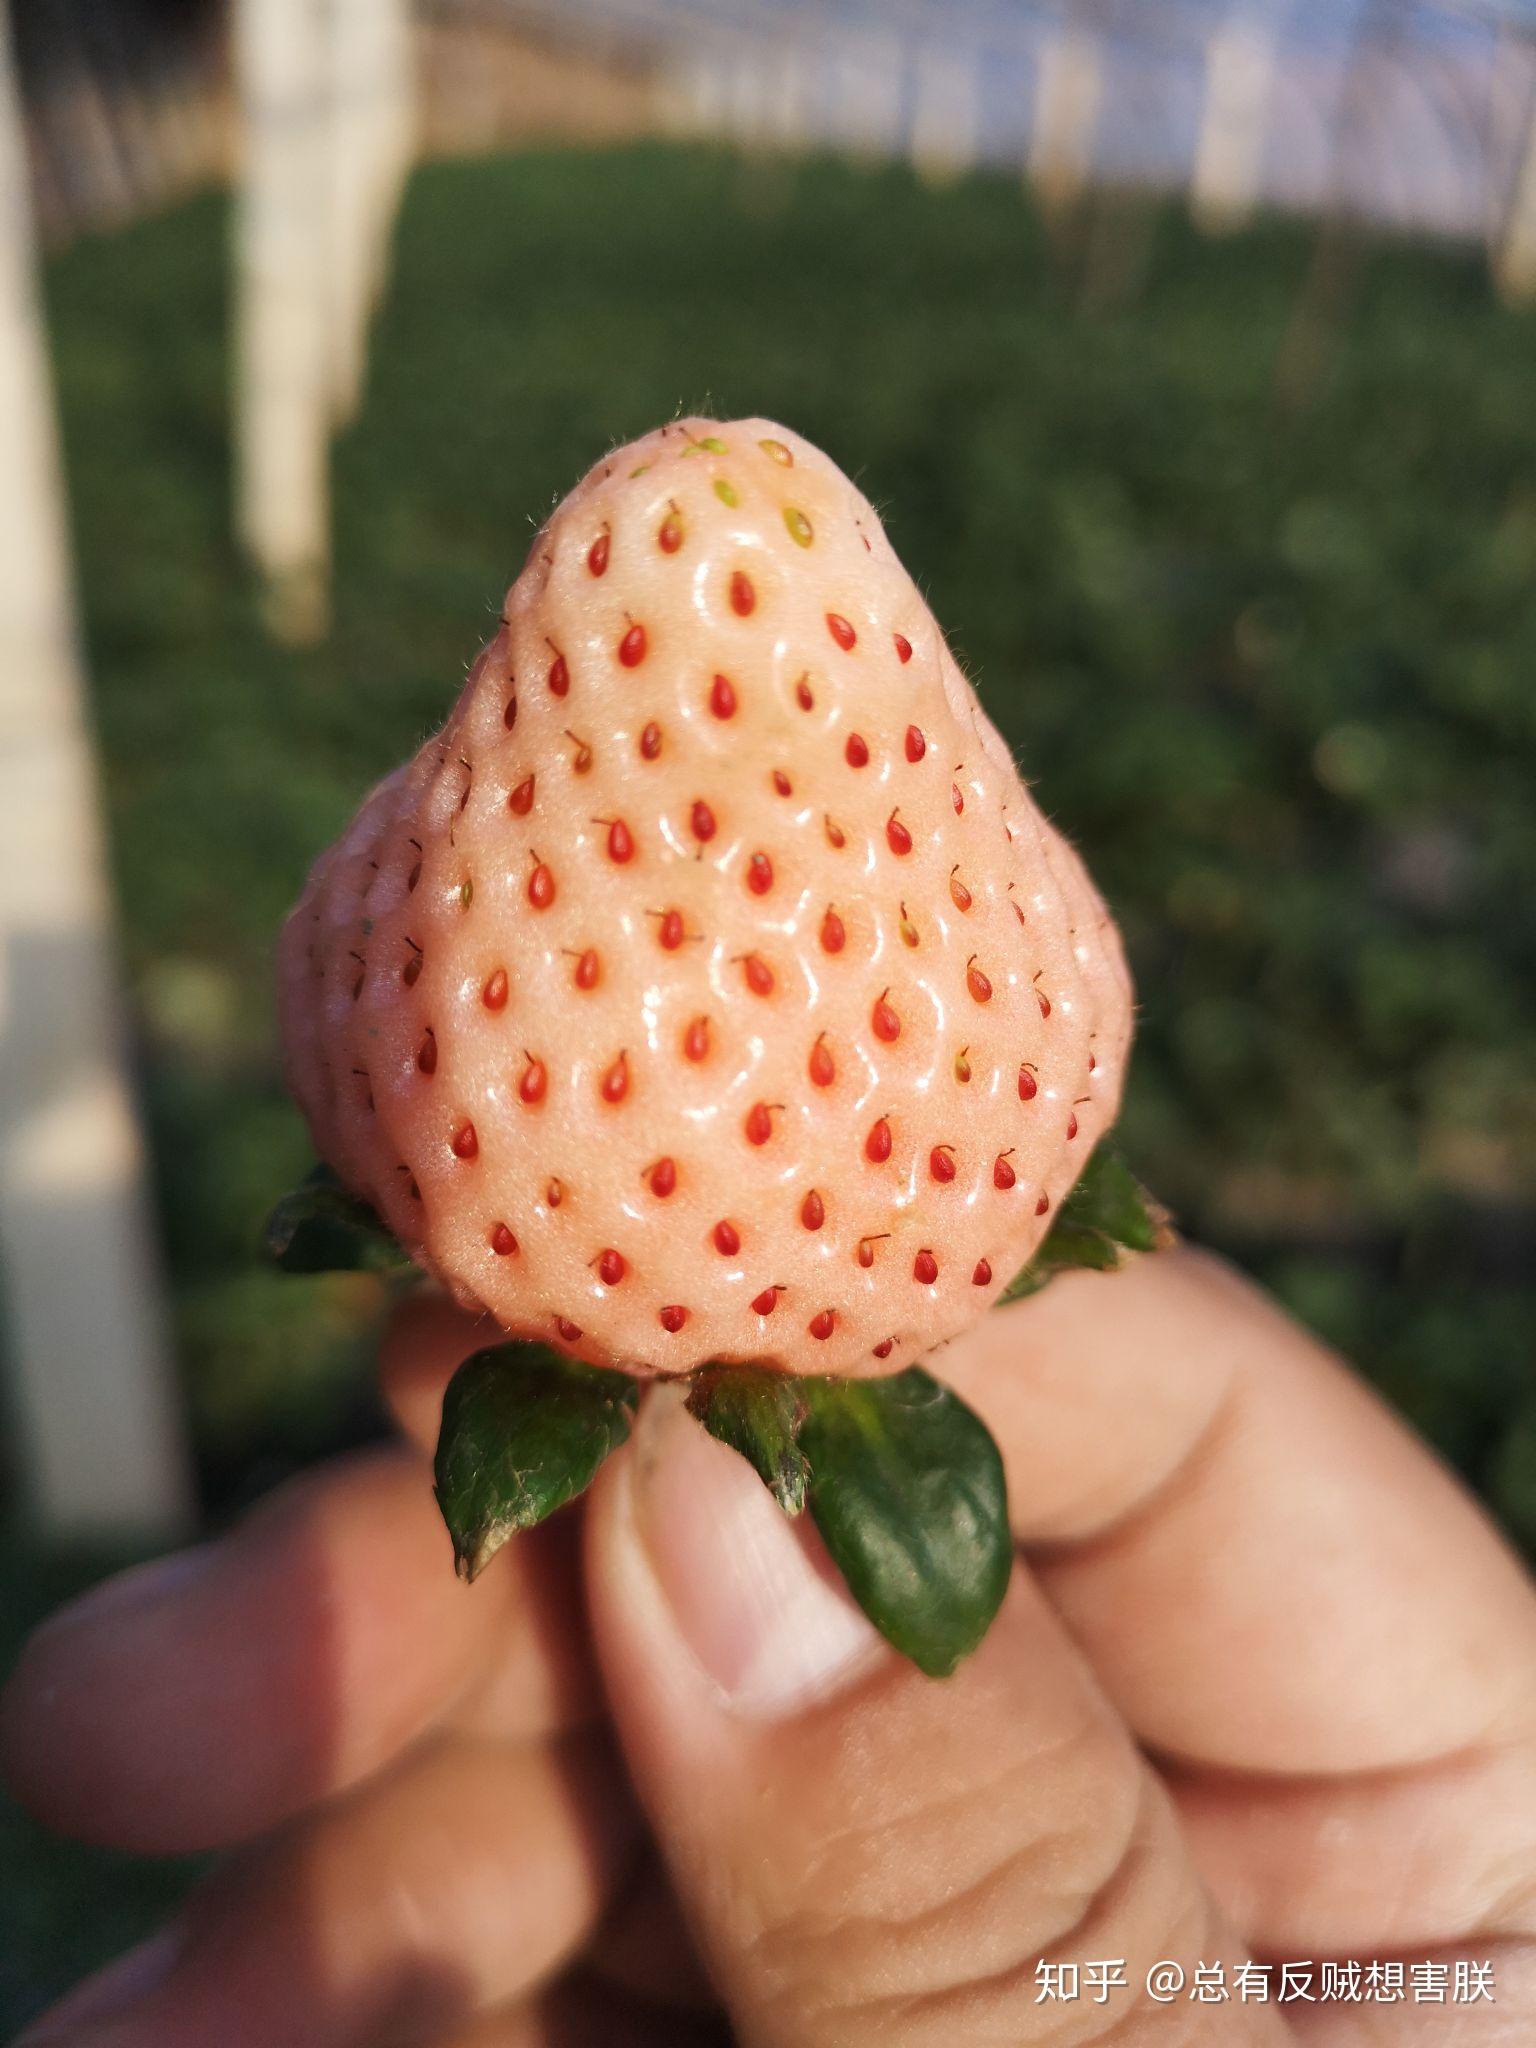 到底能不能让孩子吃草莓？我们拿京东自营的草莓做了检测，有发现 - 知乎